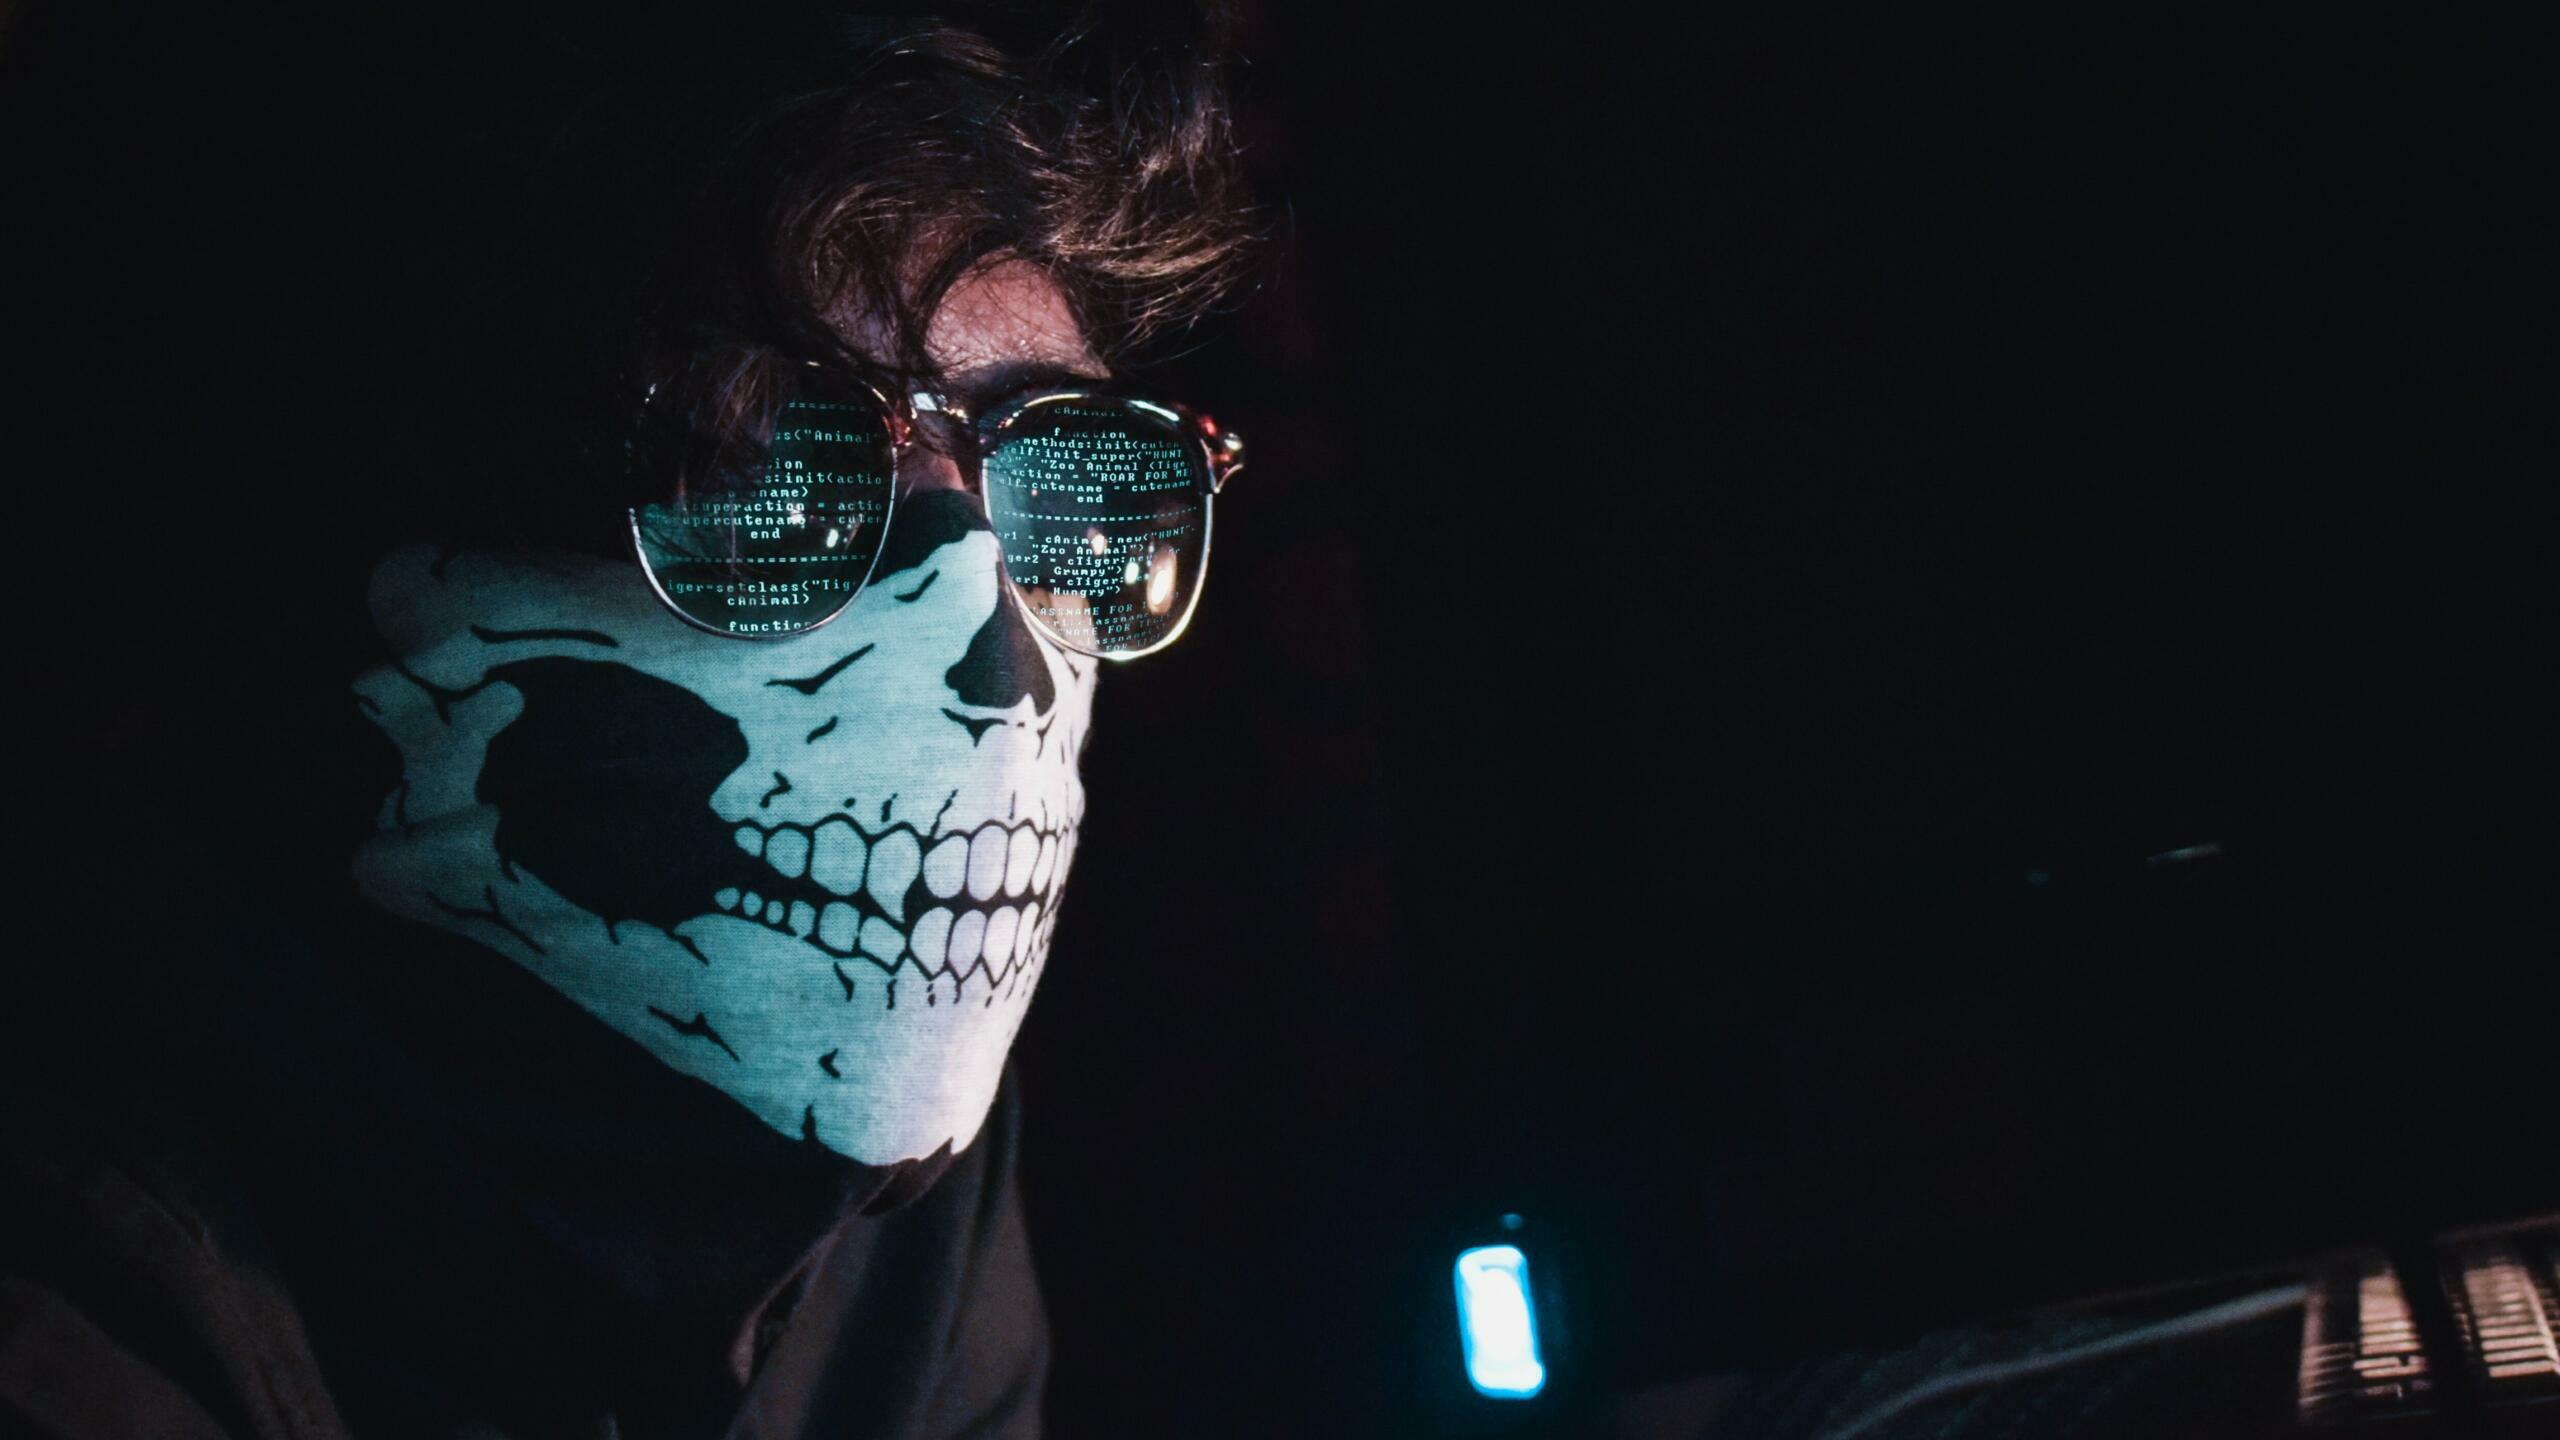 Mann mit Totenkopfmaske und Sonnebrille sitzt in dunklem Raum.